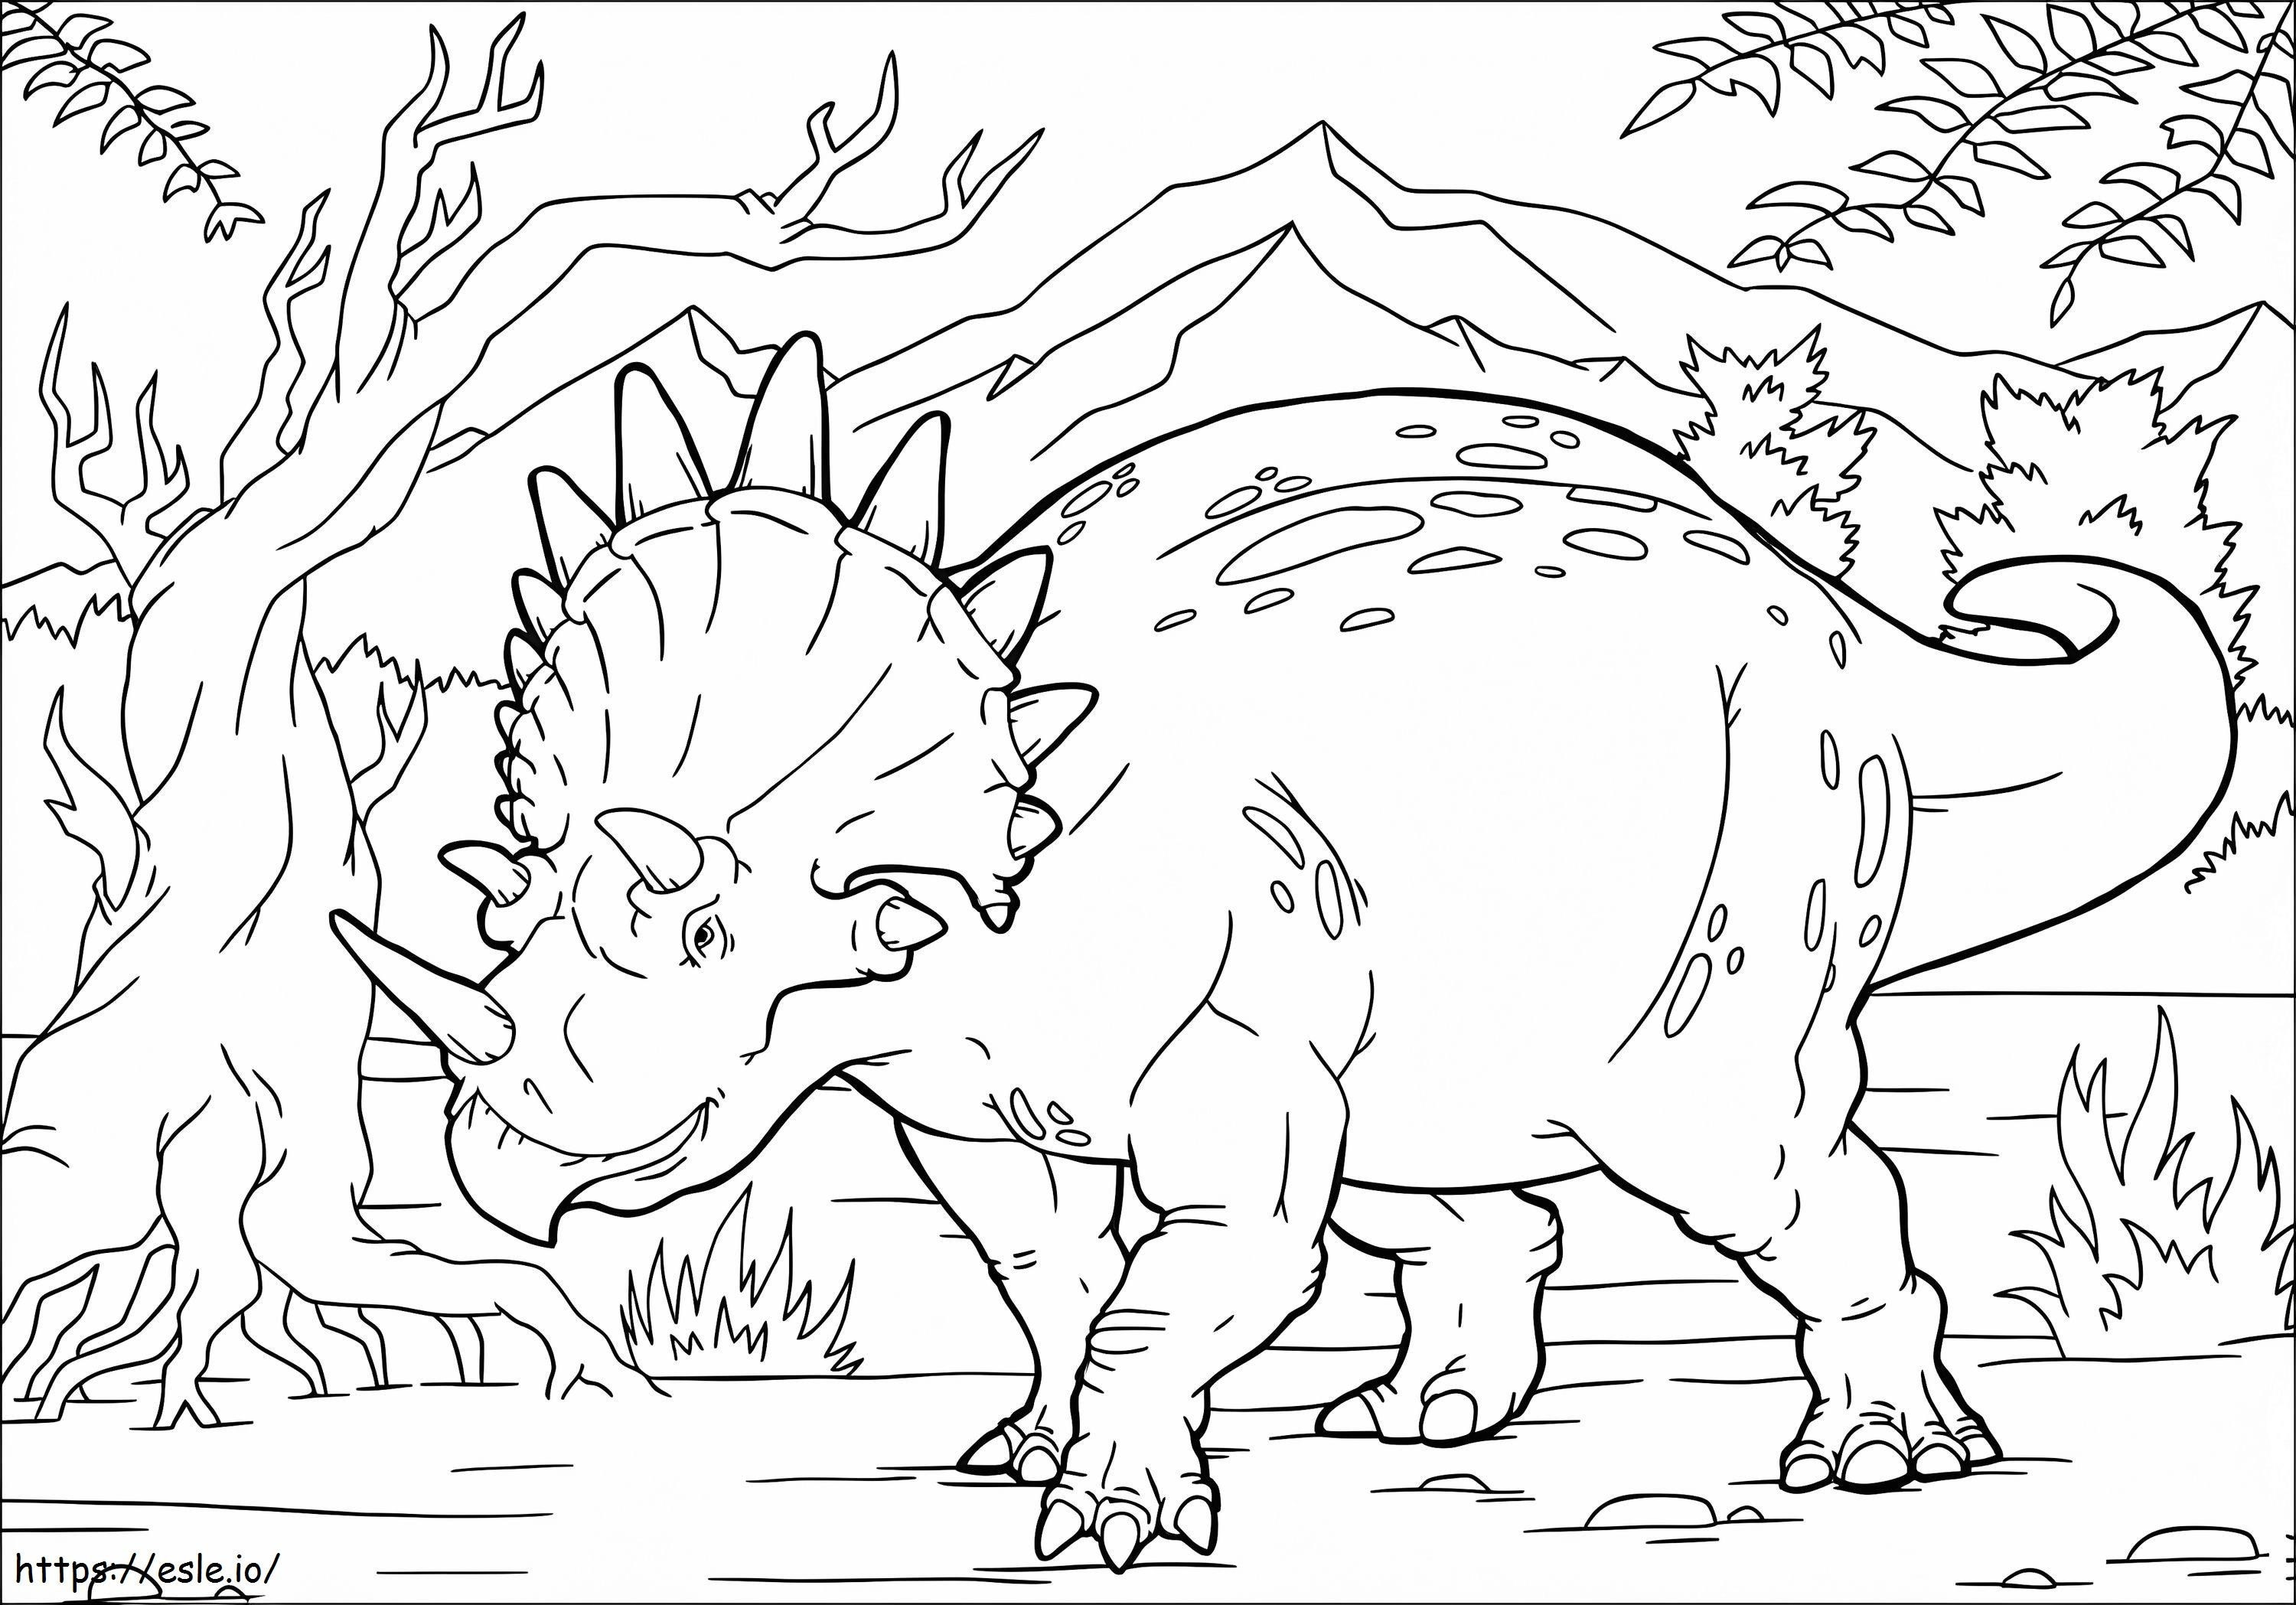 Dinosaurier Triceratops ausmalbilder